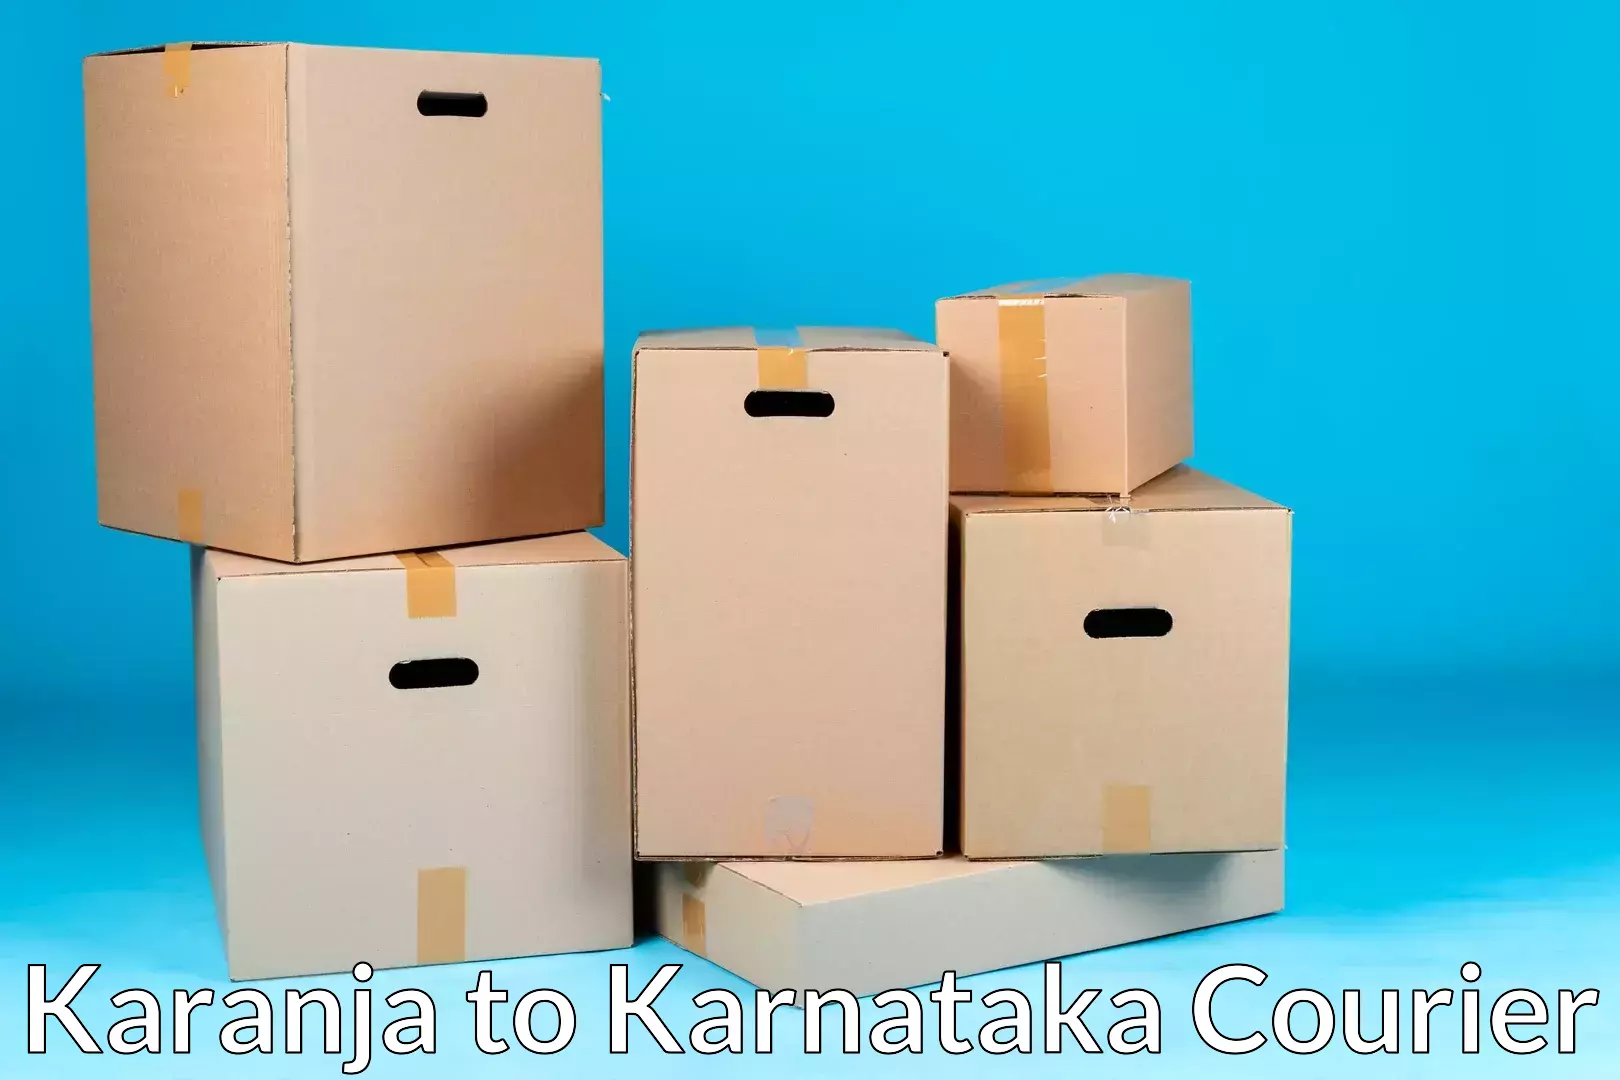 Door-to-door relocation services Karanja to Ramanathapura